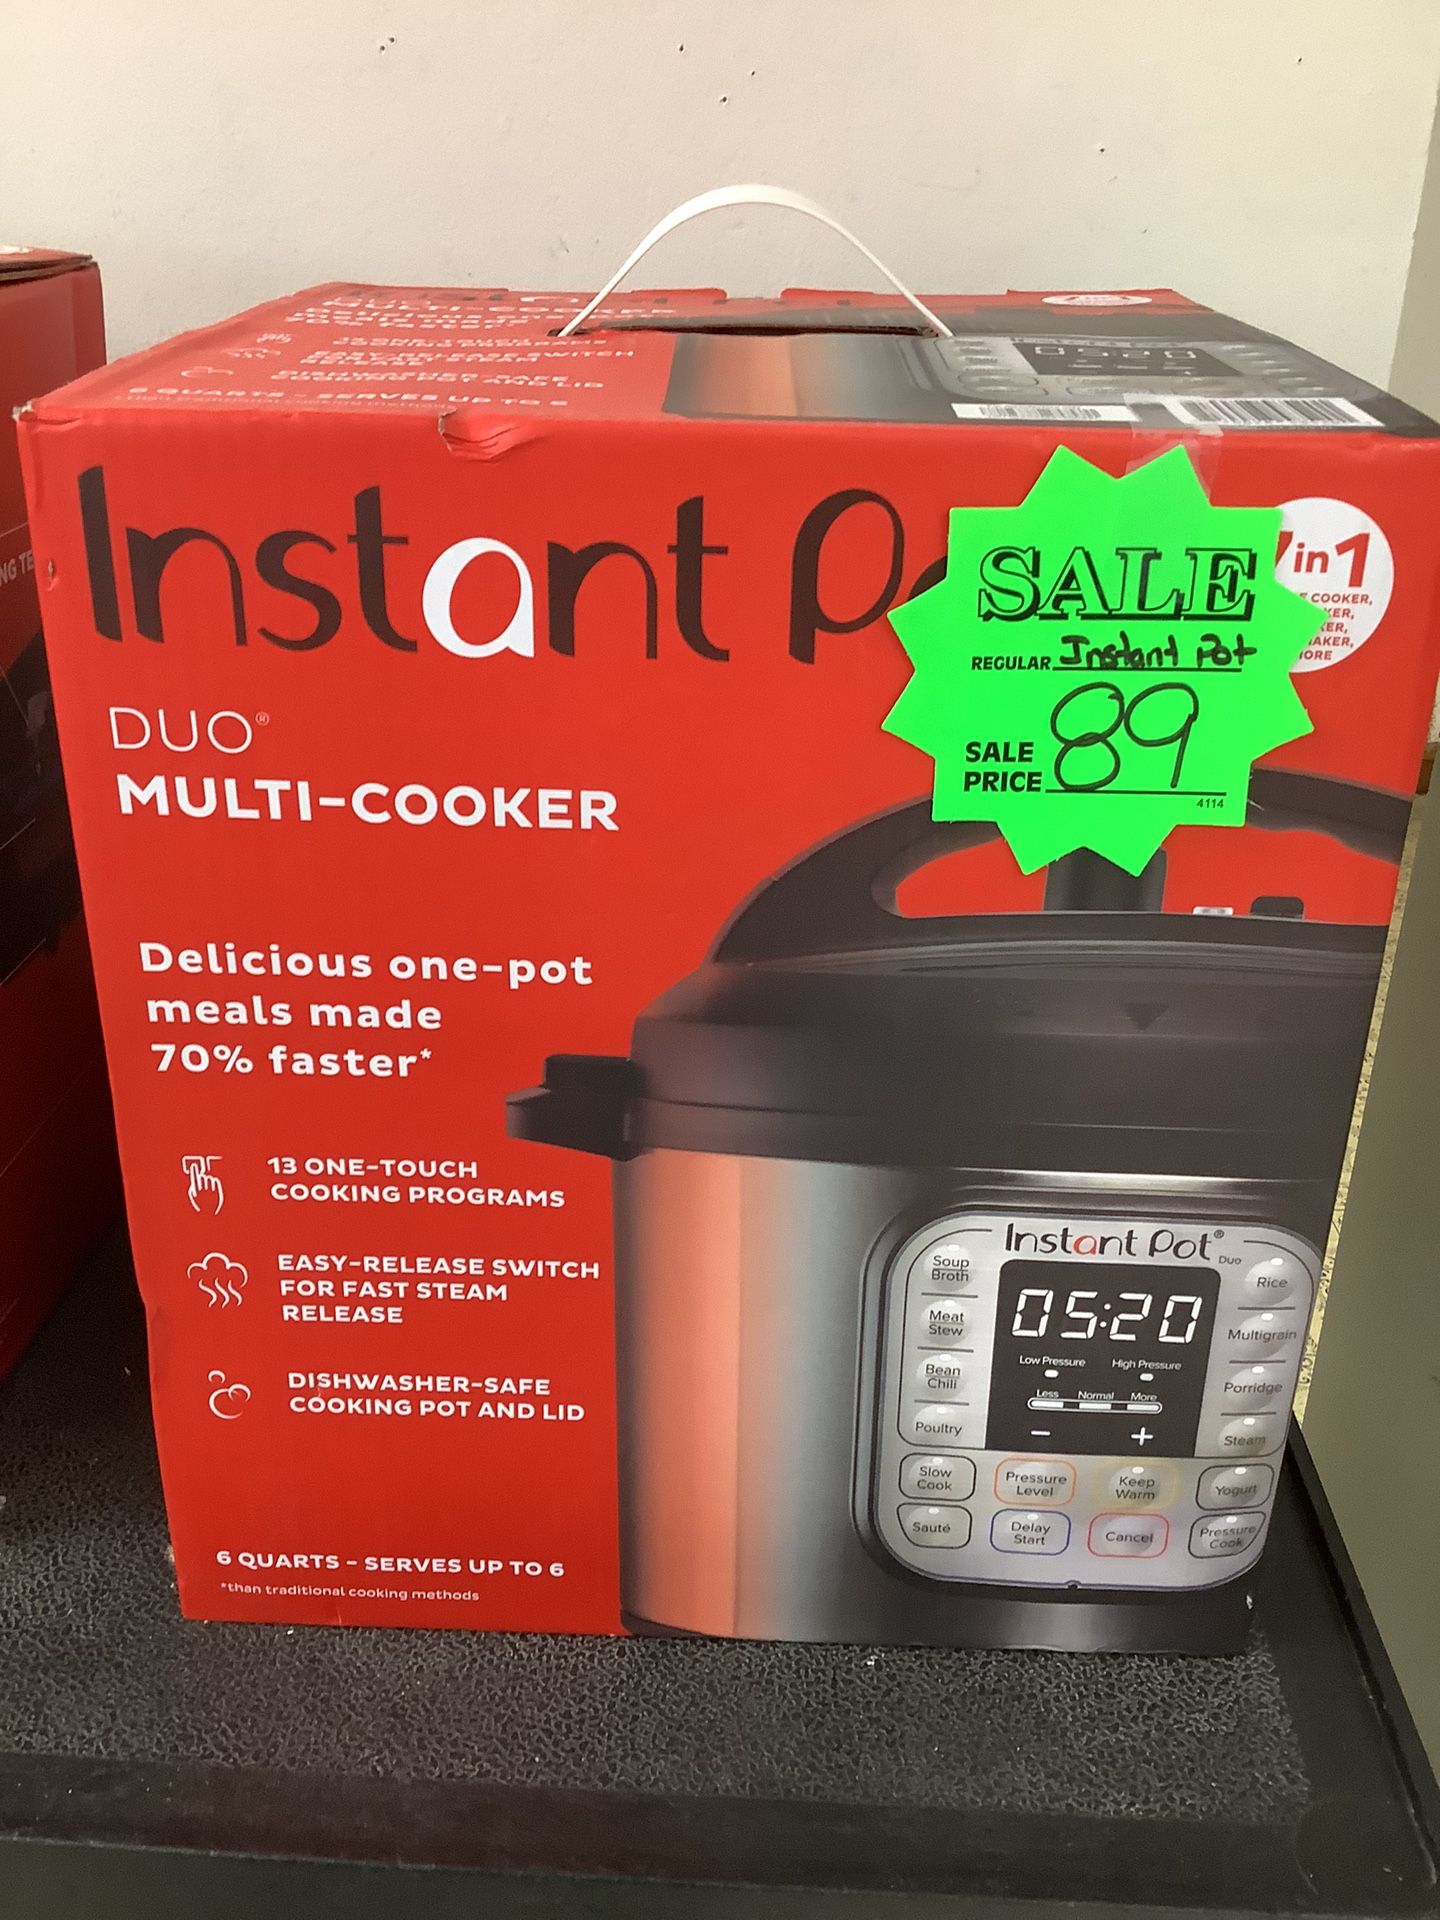 Instant Pot-$89 (Rj Cash Pawnshop 2505 NW 183rd St)